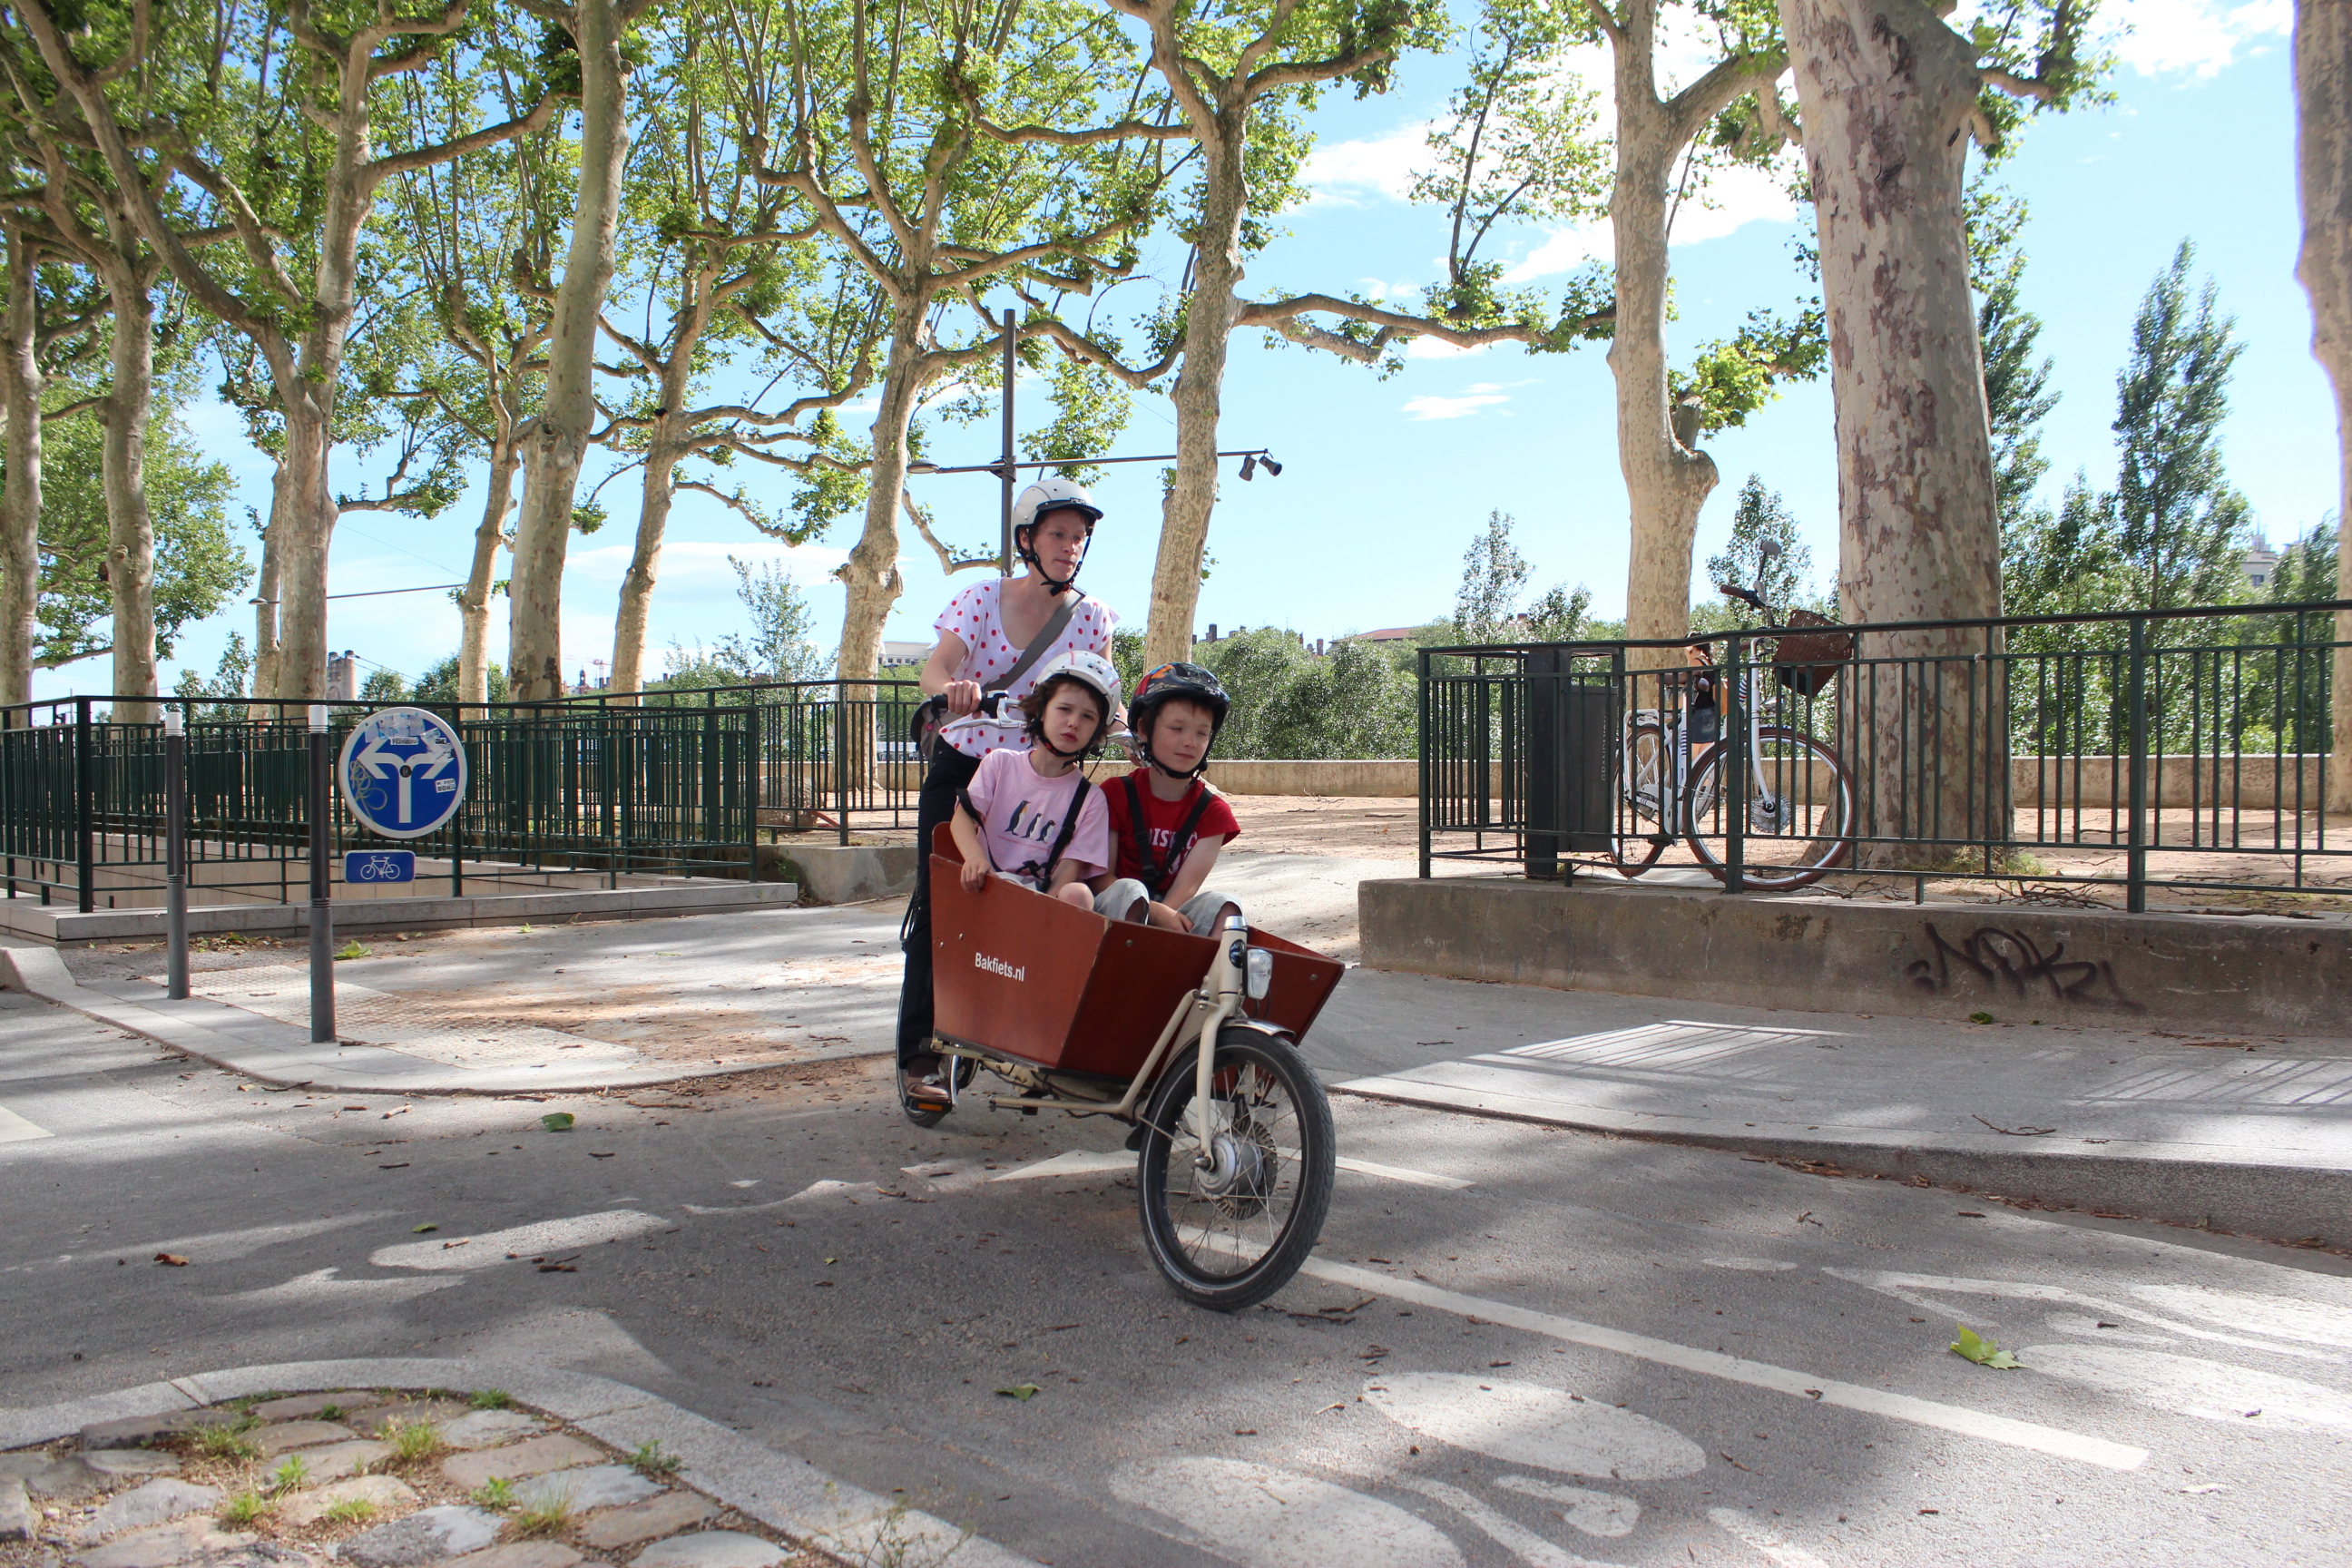 Animation « Transporter ses enfants à vélo » à Montpellier (mercredi 10 septembre)